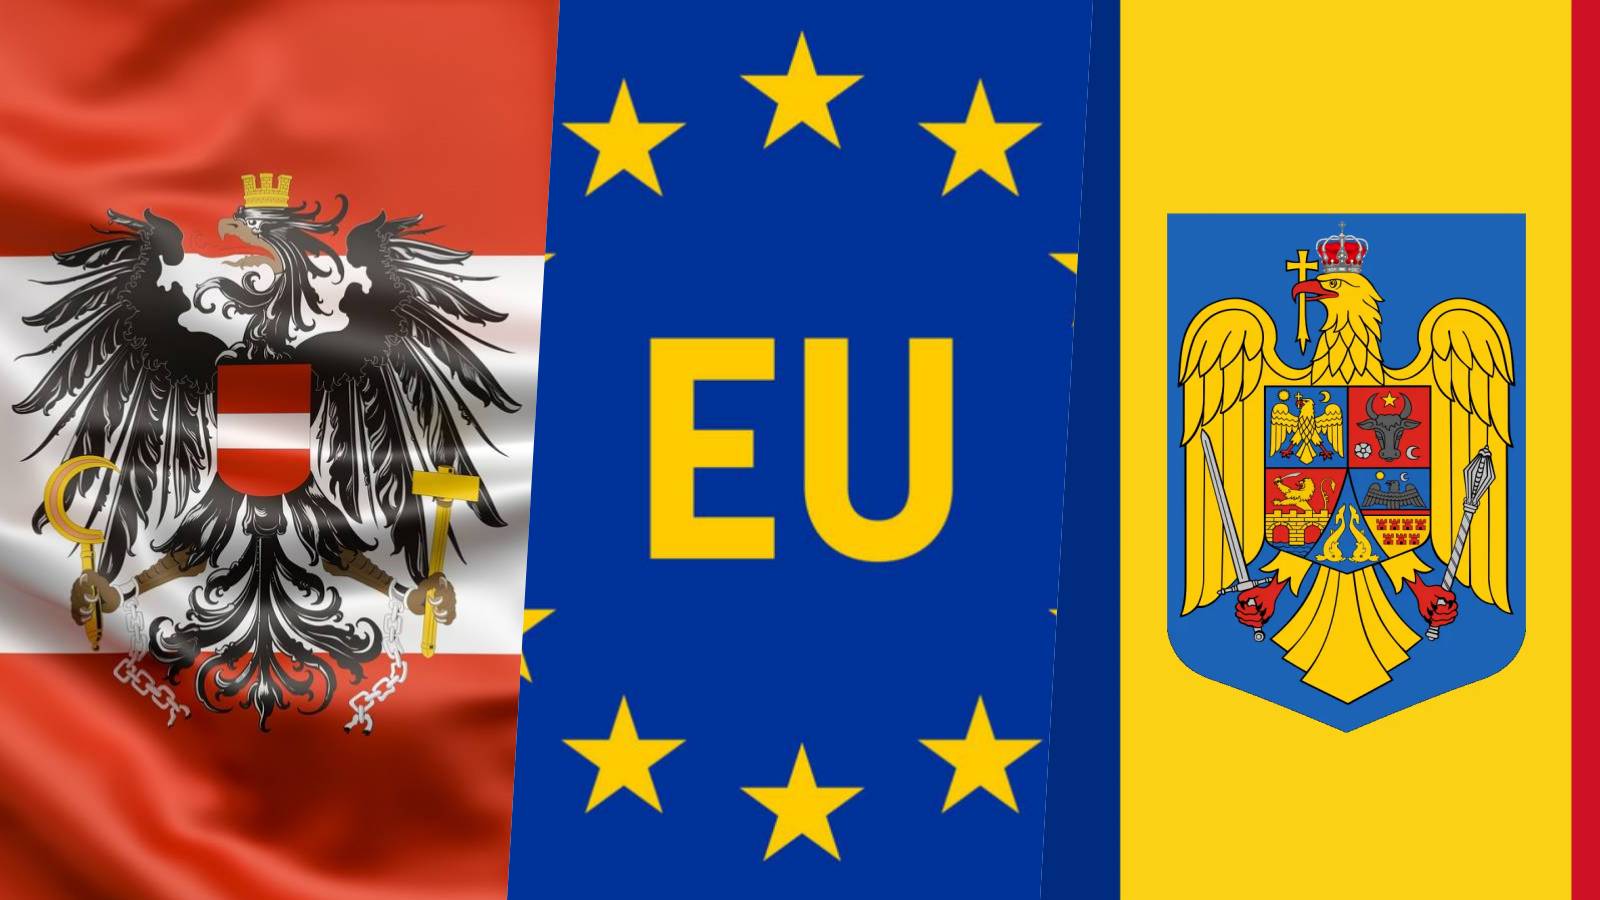 Austria Anunturile DEZAMAGITOARE Vienei ULTIMA ORA Aderarea Romaniei Schengen